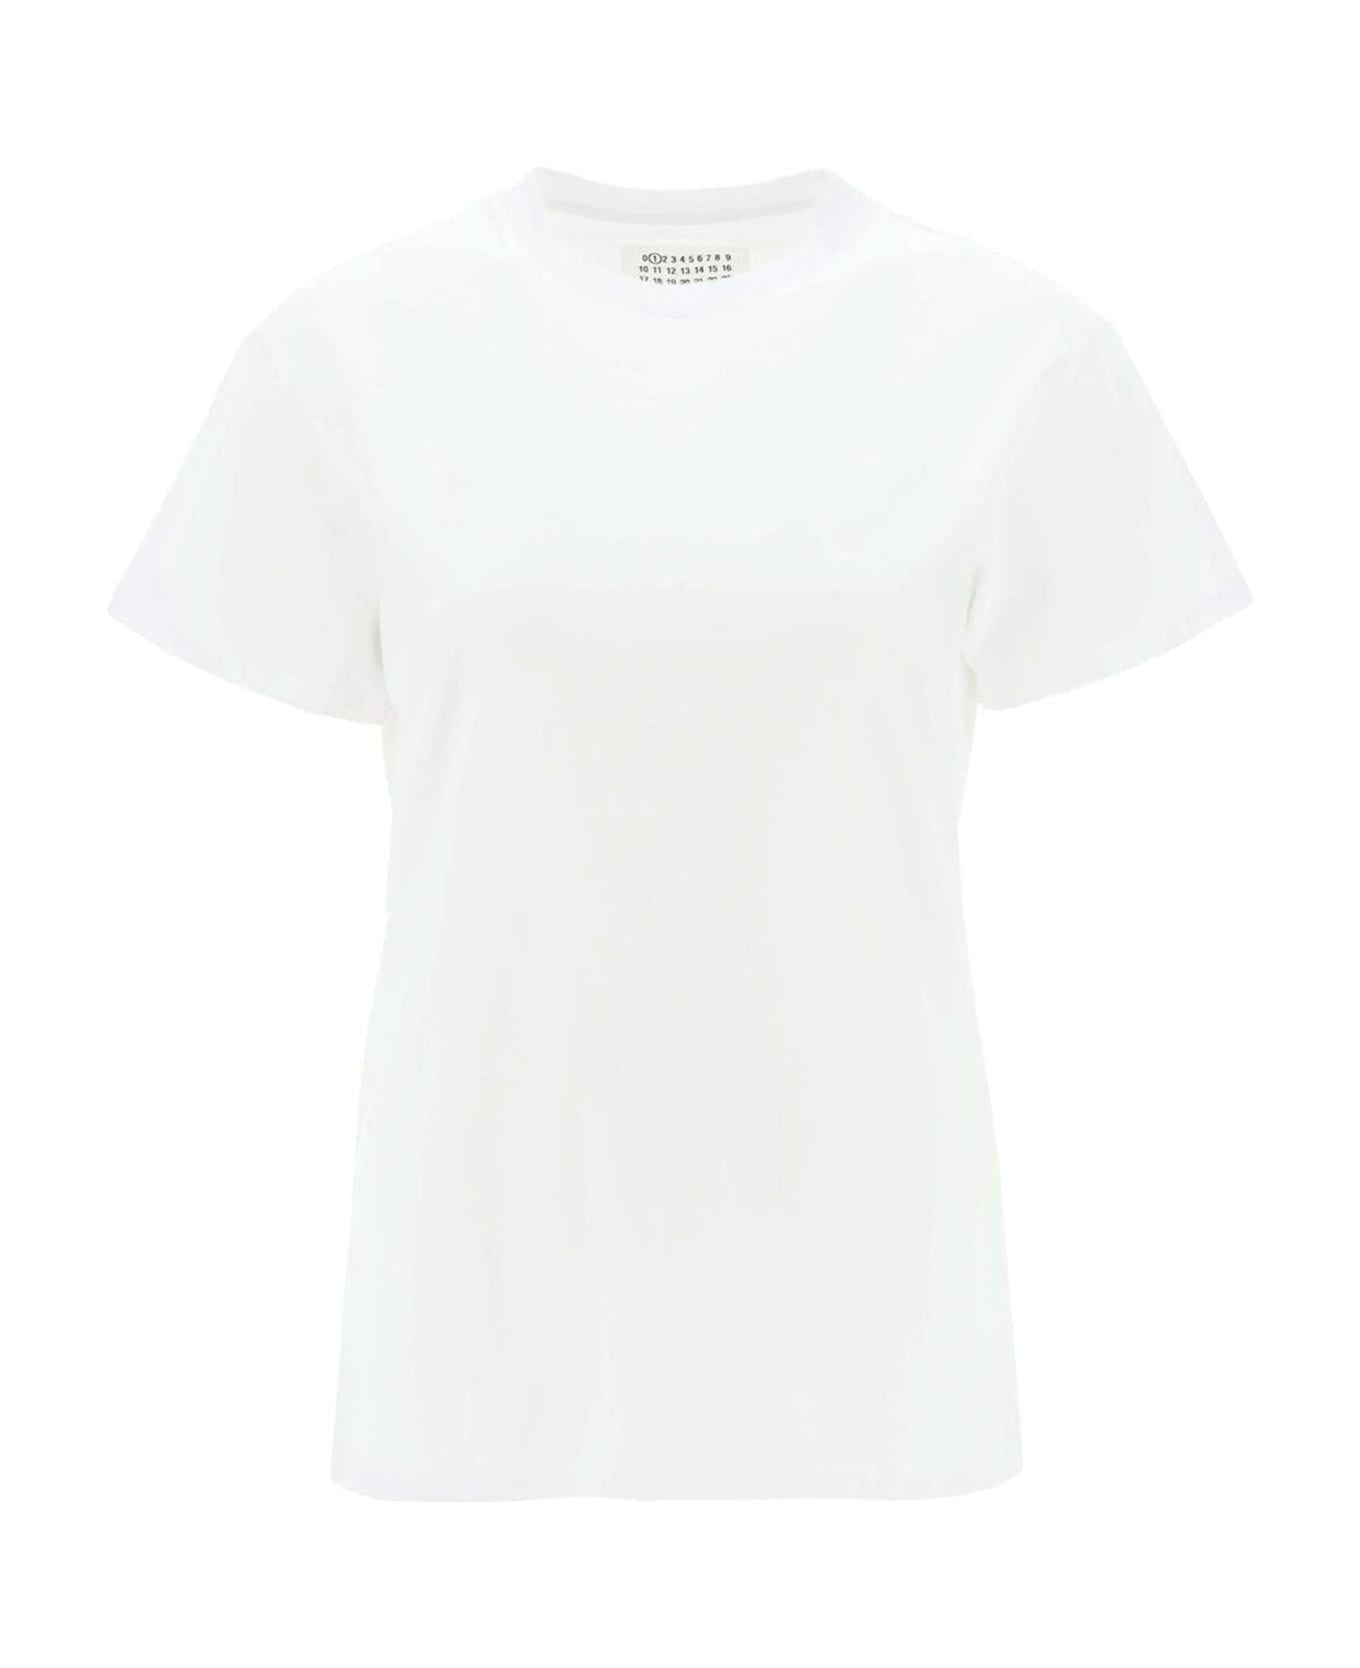 Maison Margiela Cotton T-shirt - White